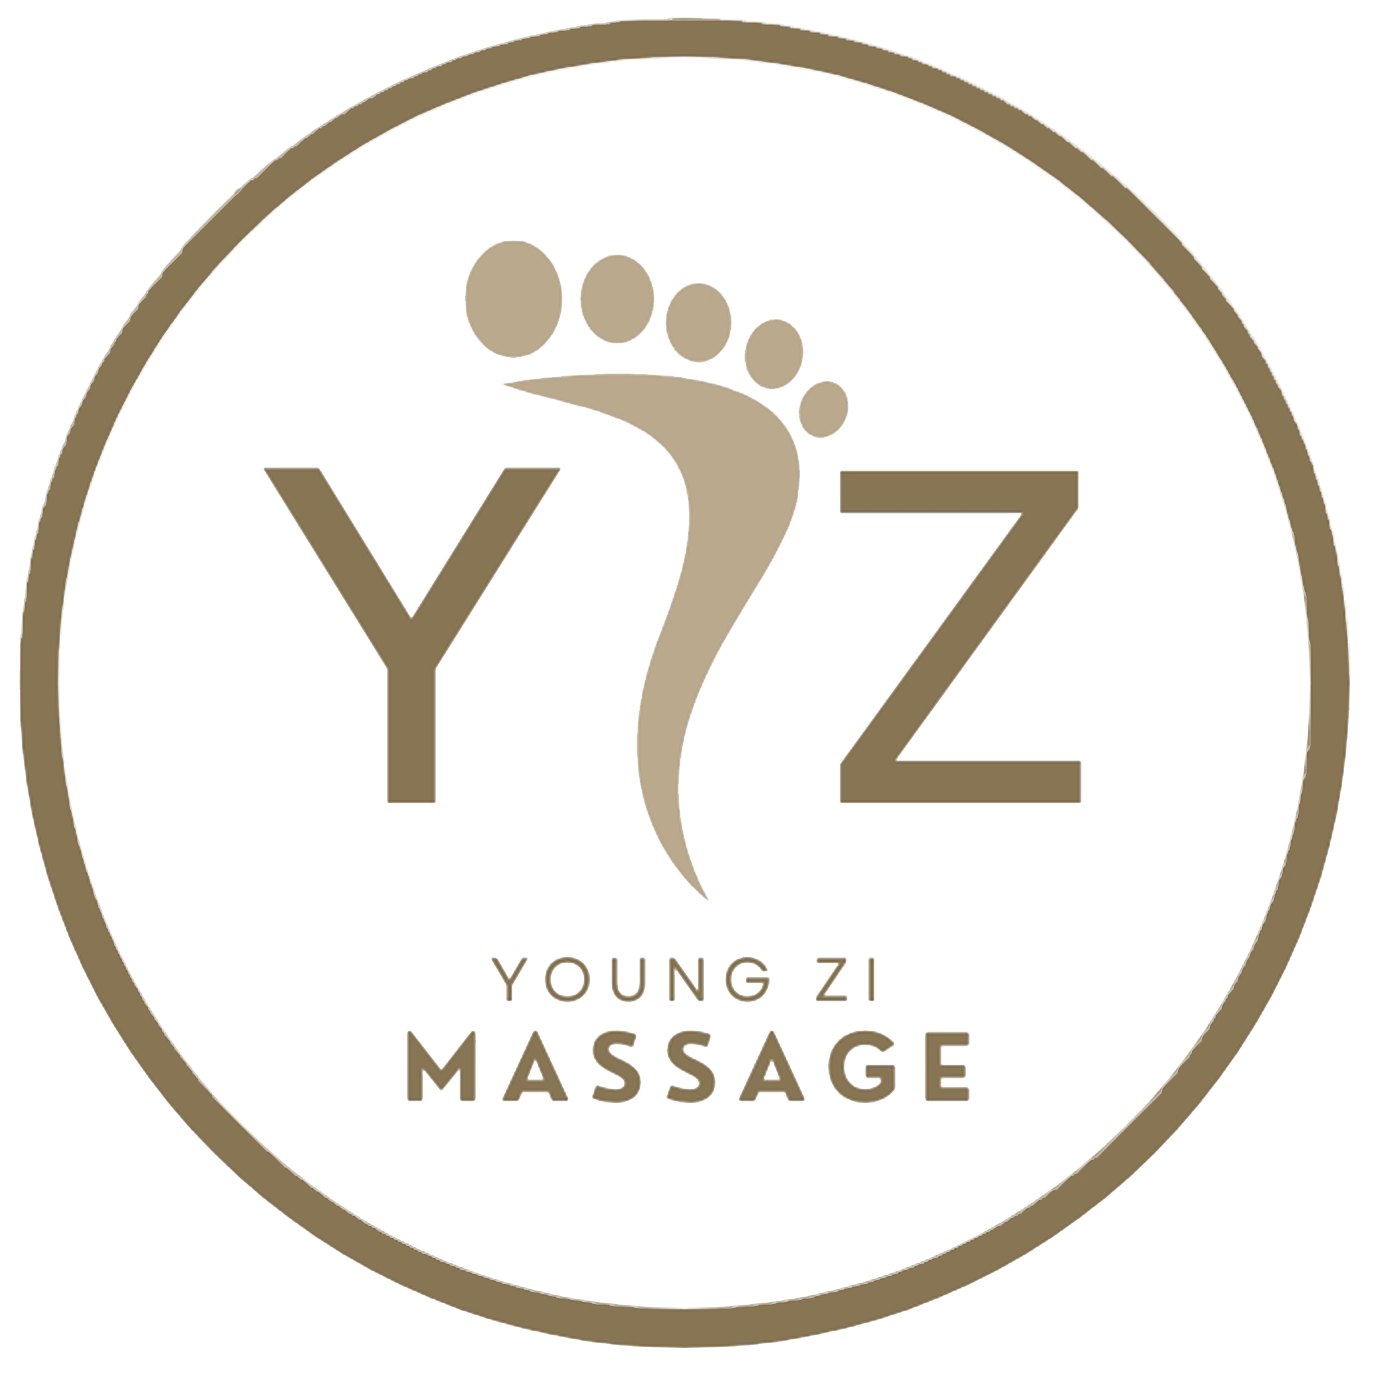 Youngzi Massage